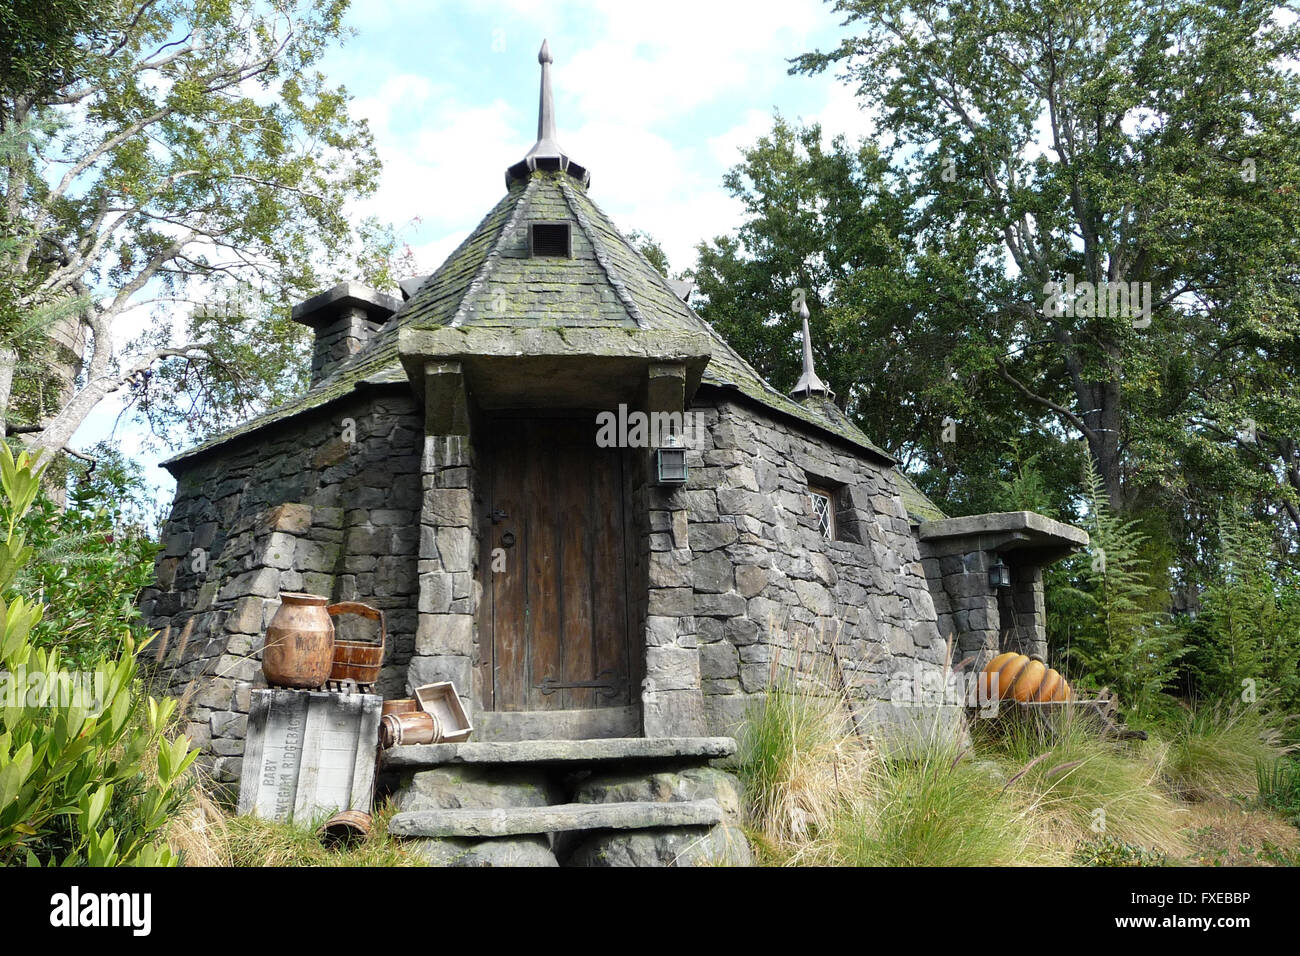 La cabane d'Hagrid de Harry Potter Photo Stock - Alamy